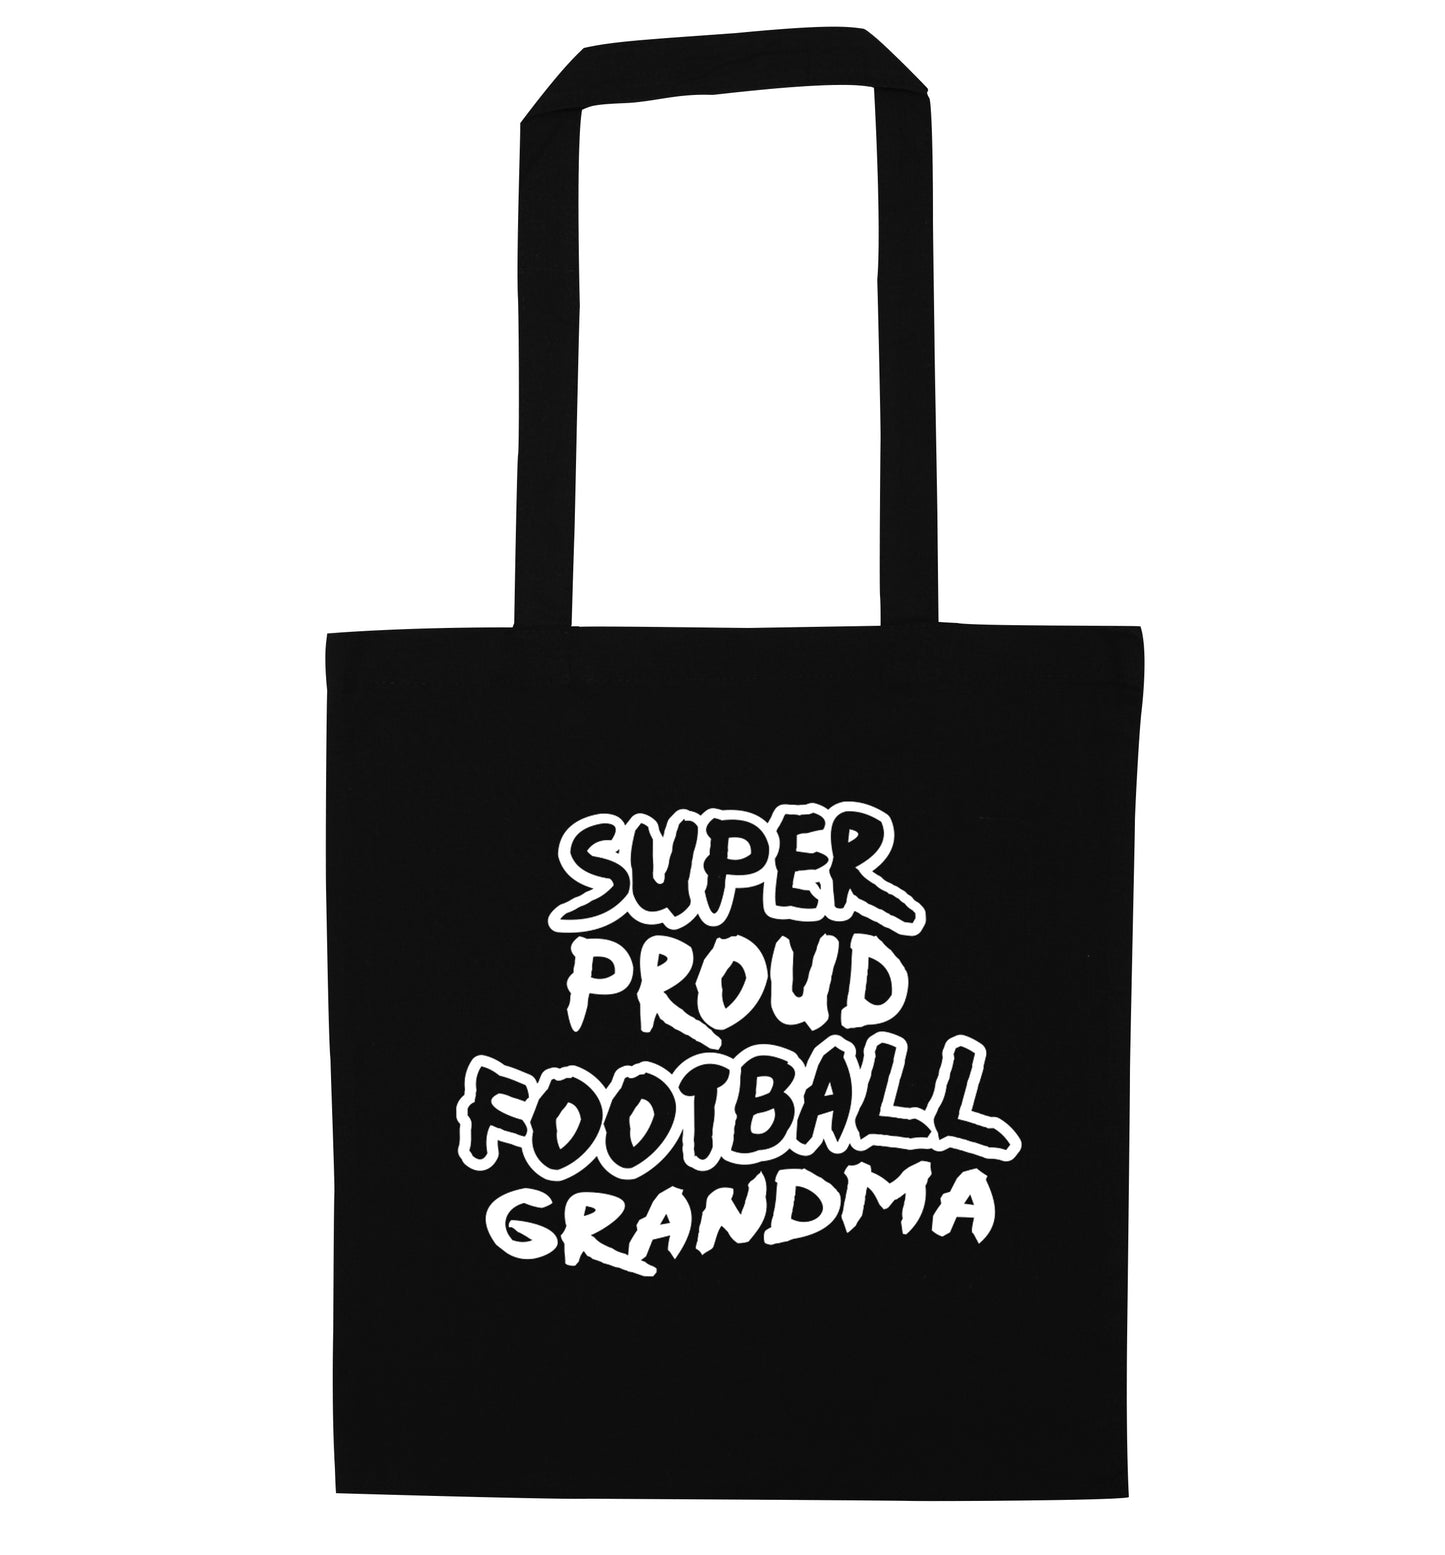 Super proud football grandma black tote bag